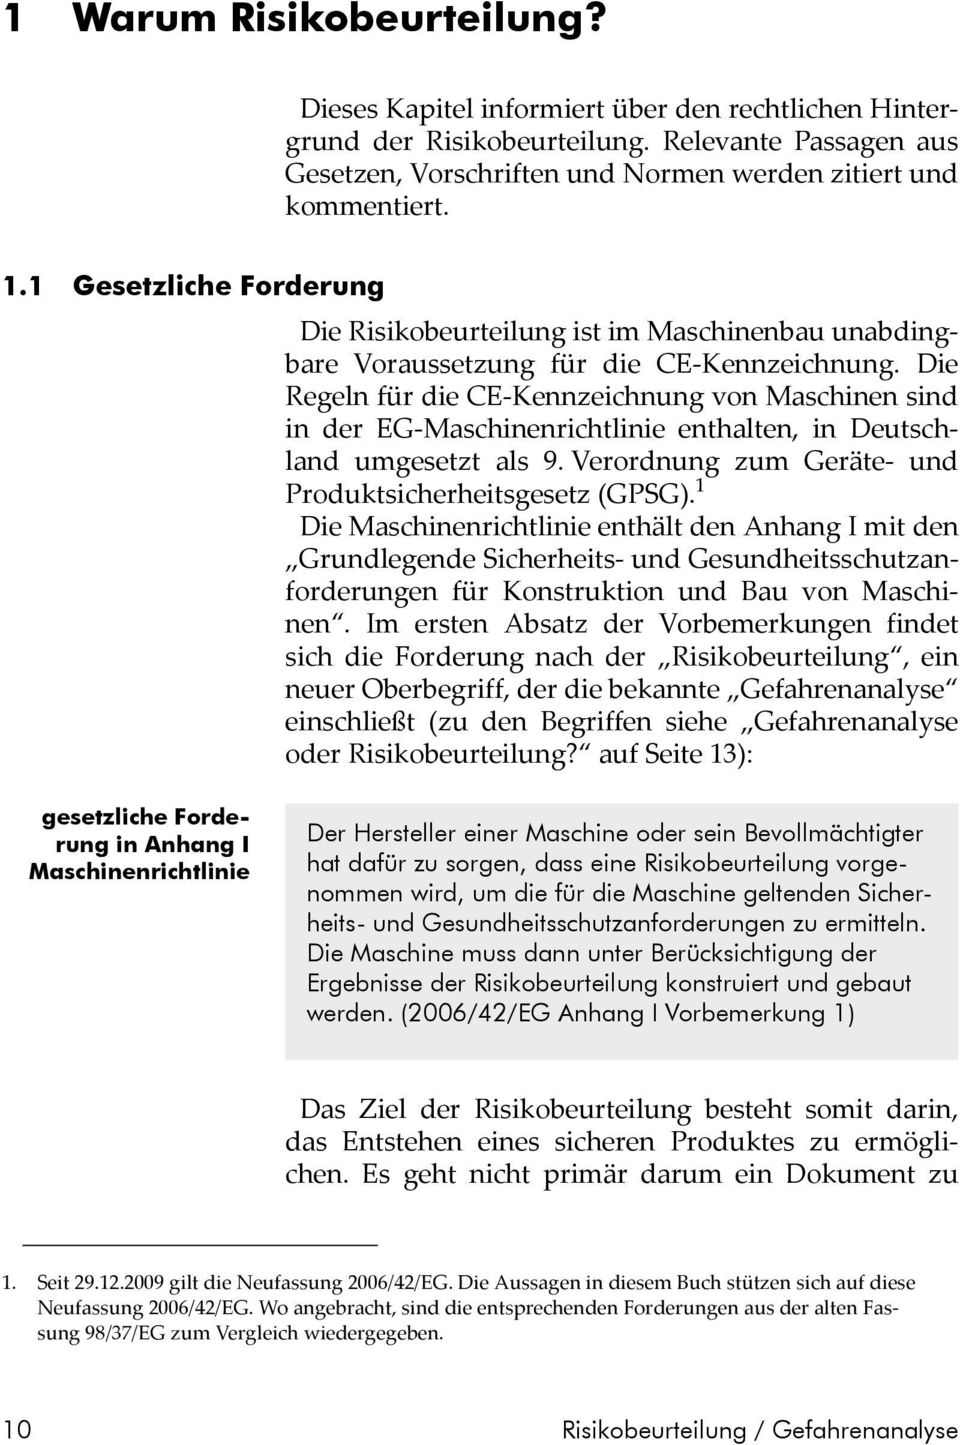 Die Regeln für die CE-Kennzeichnung von Maschinen sind in der EG-Maschinenrichtlinie enthalten, in Deutschland umgesetzt als 9. Verordnung zum Geräte- und Produktsicherheitsgesetz (GPSG).